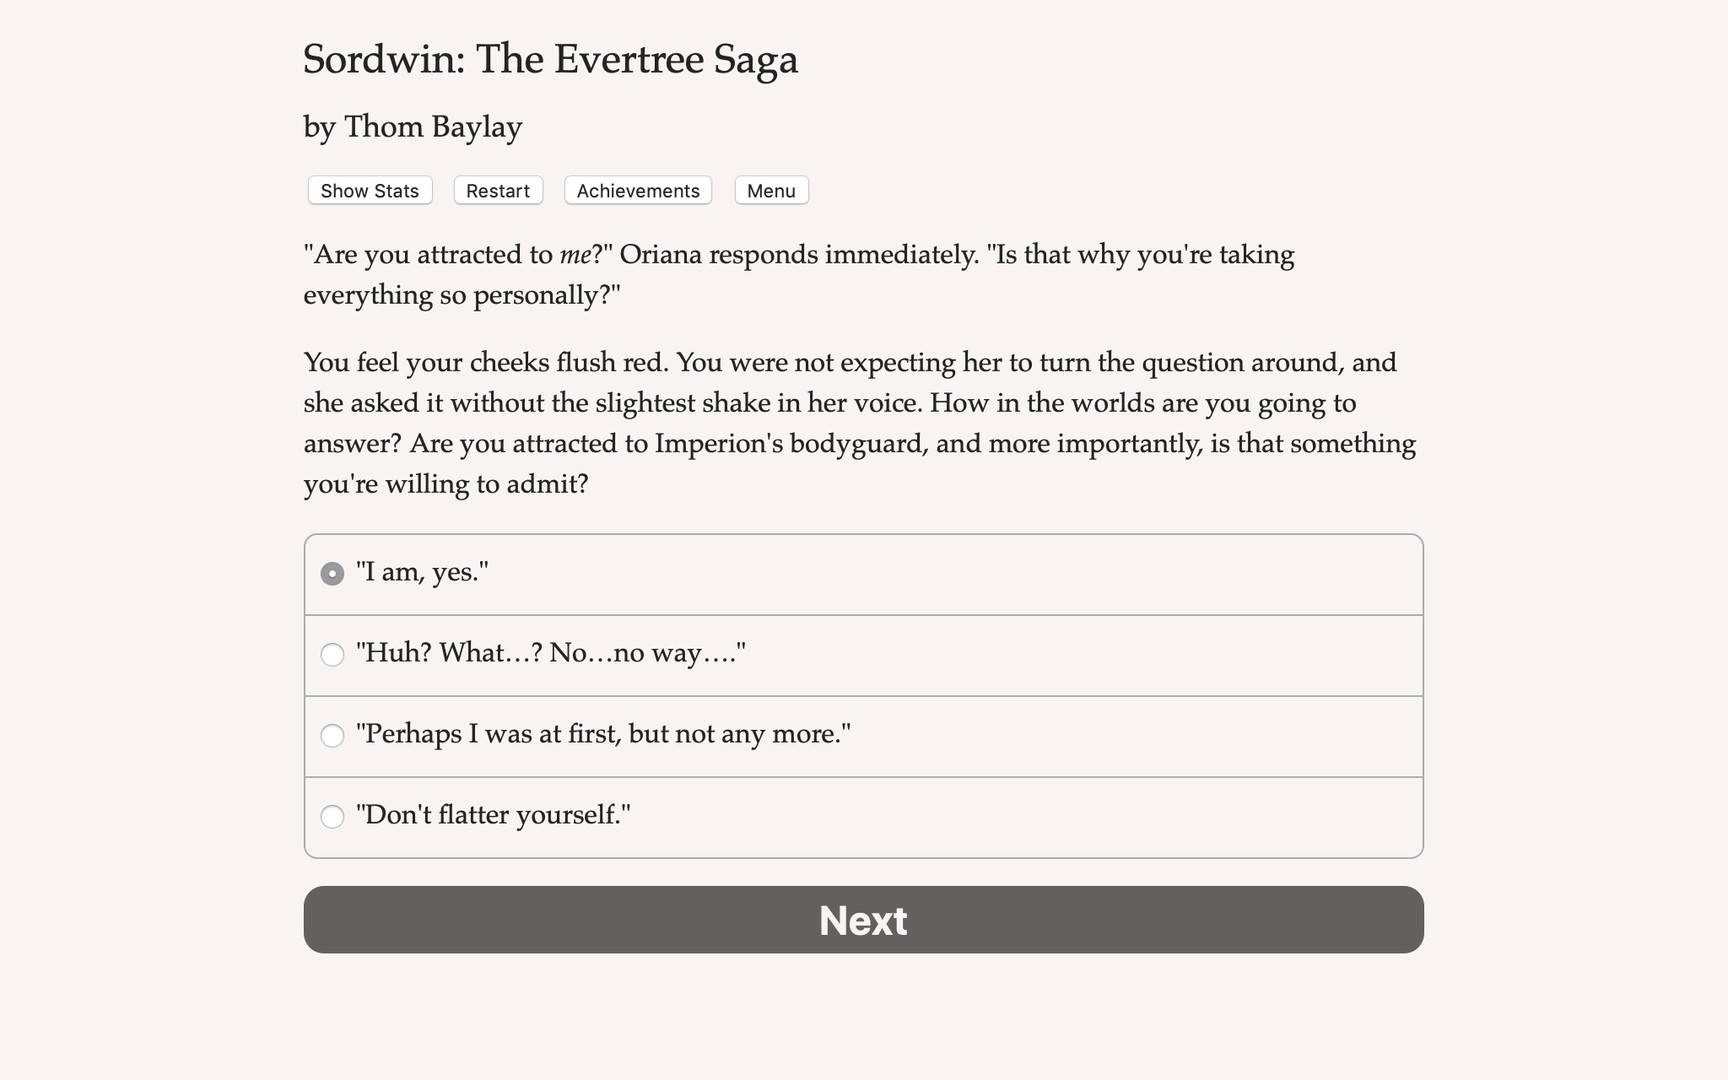 Sordwin: The Evertree Saga Free Download